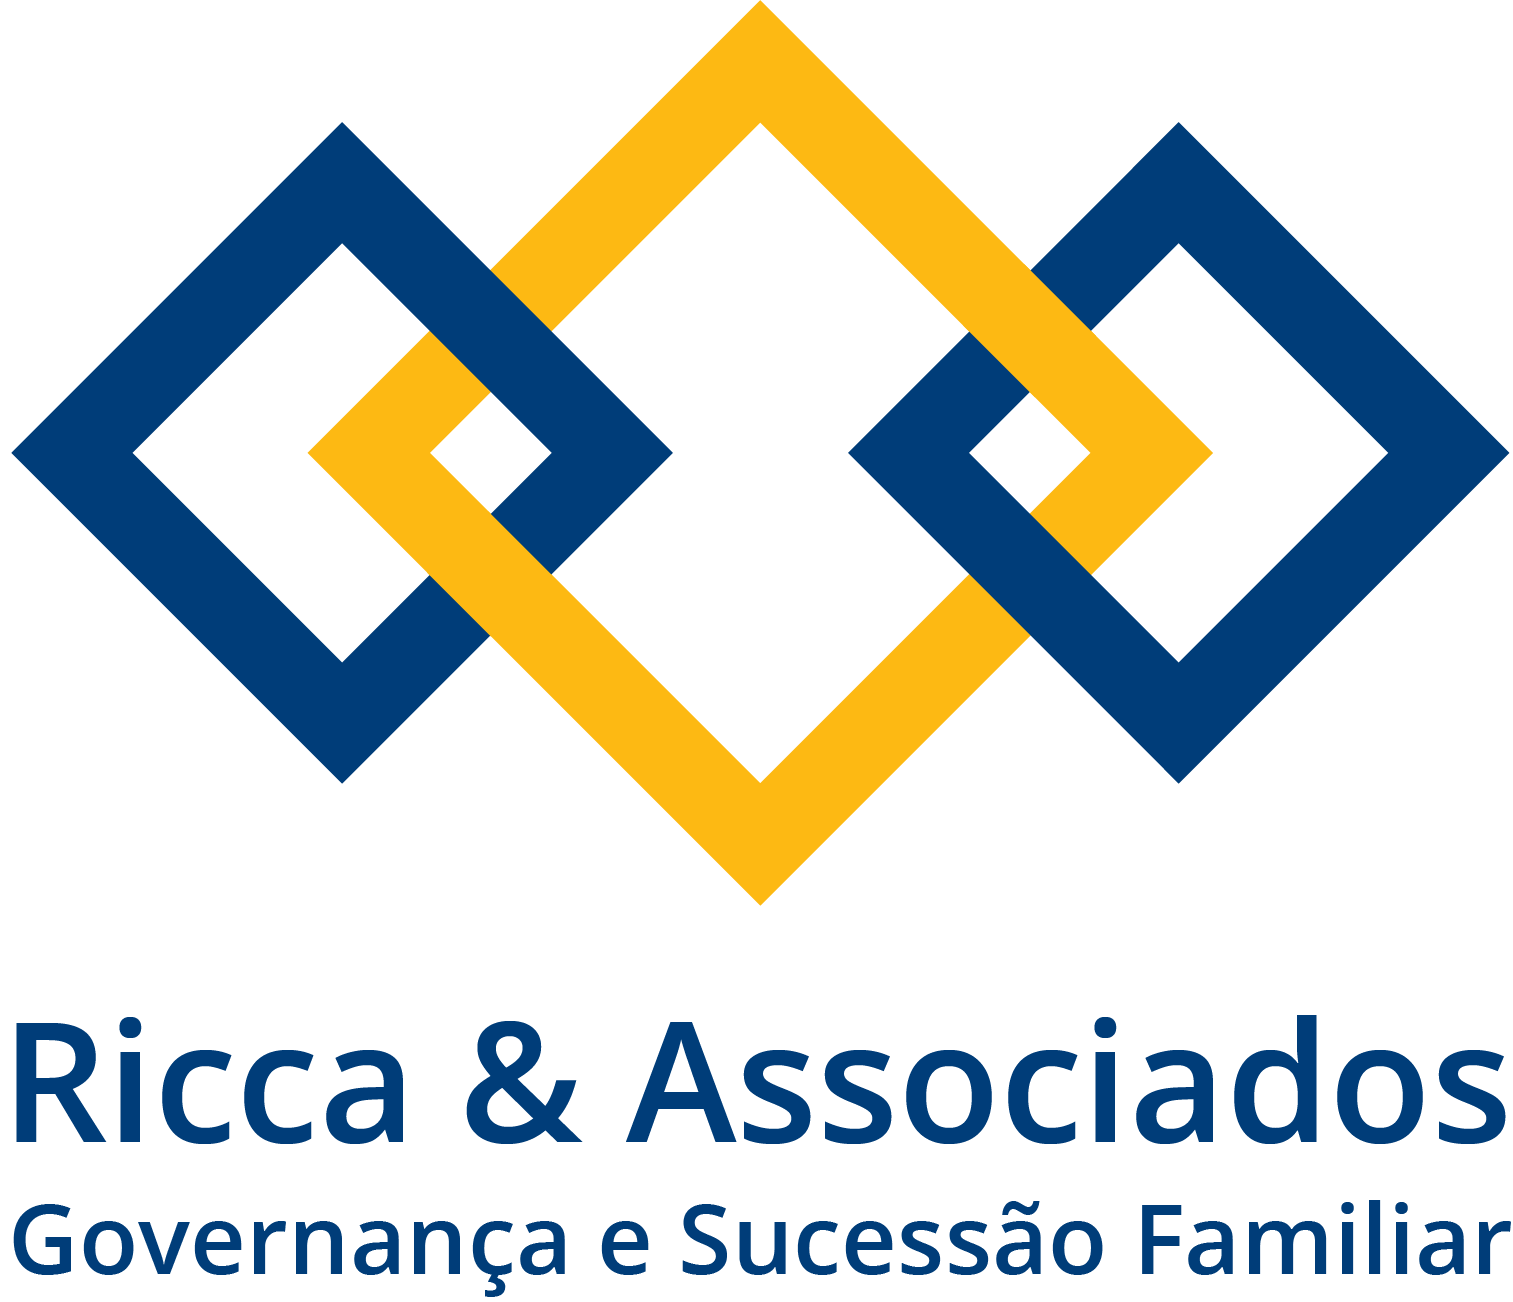 Ricca & Associados Governança e Sucessão familiar